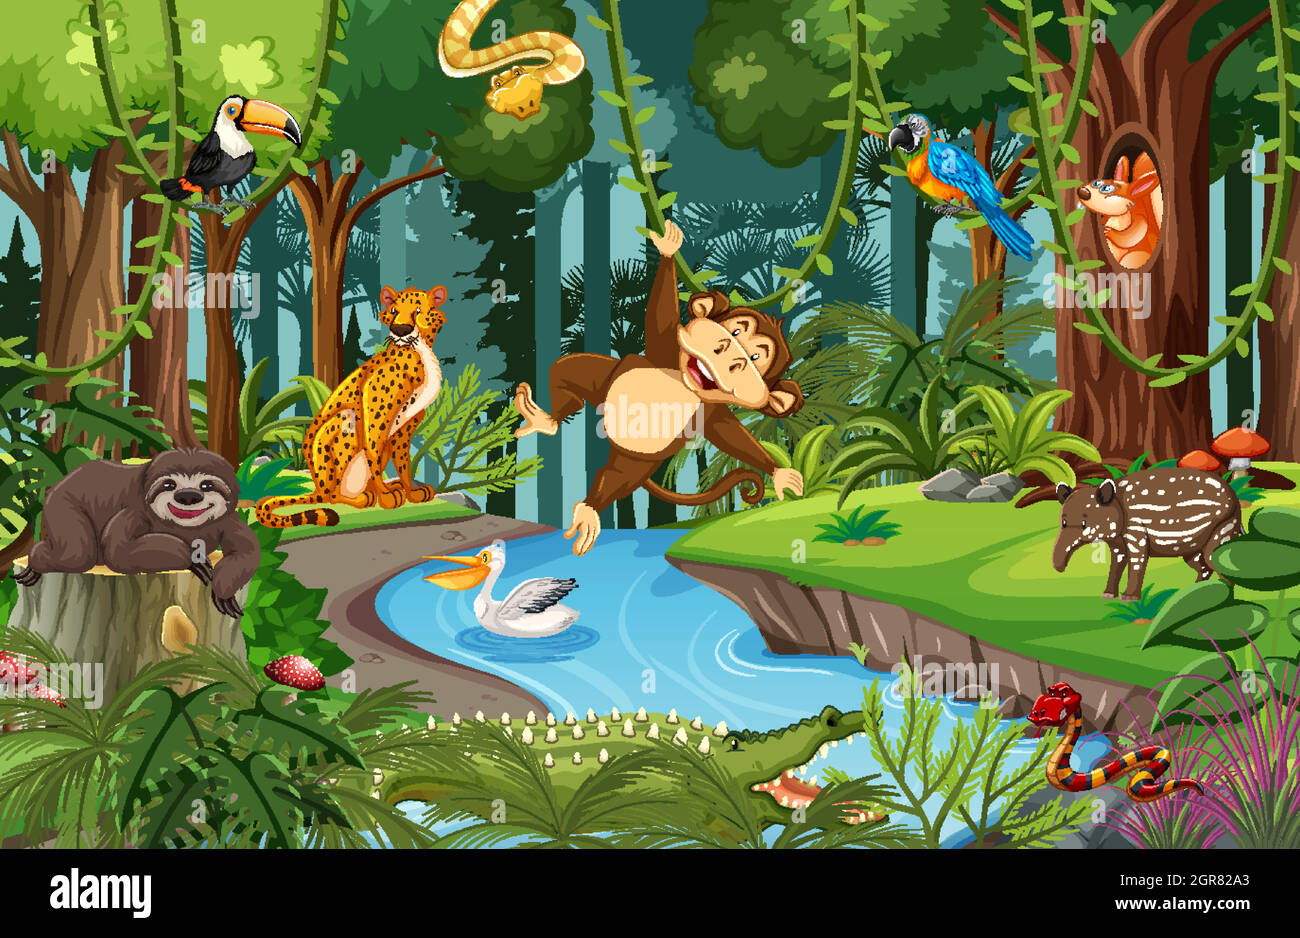 Personnage de dessin animé animal sauvage dans la scène de la forêt Illustration de Vecteur